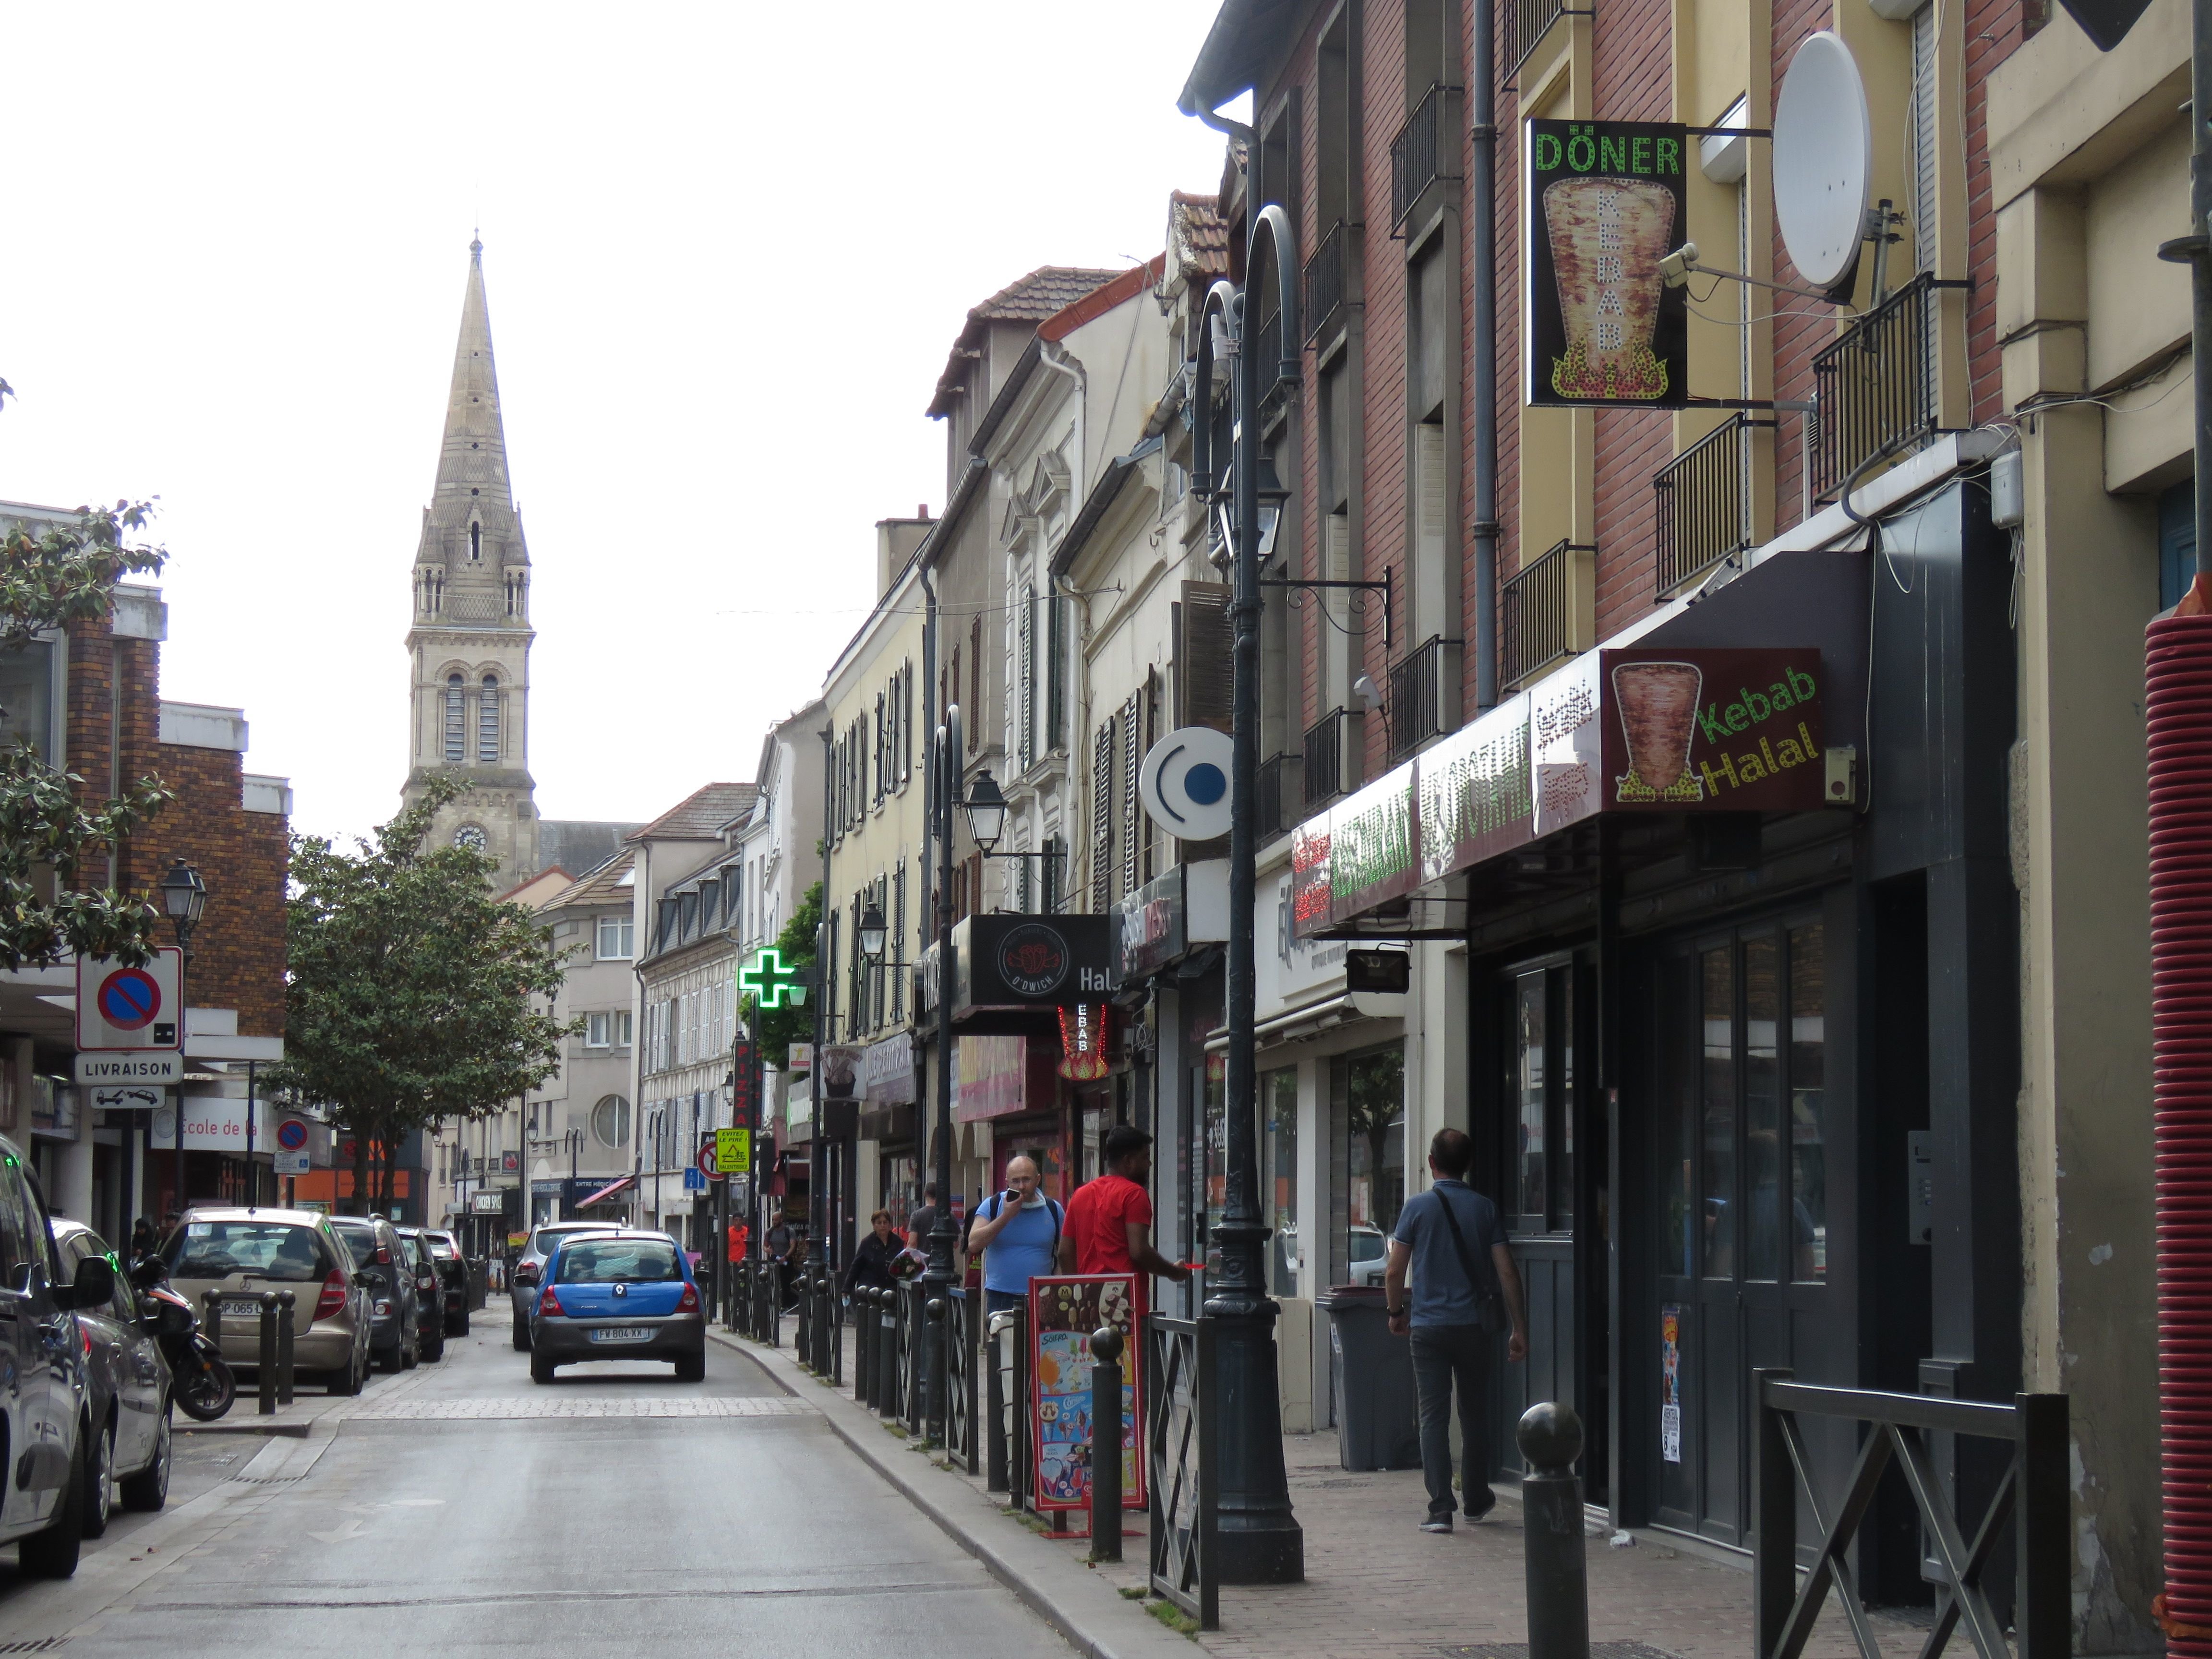 Argenteuil (Val-d'Oise), mardi 10 mai 2022. Le centre-ville, avec notamment la rue Paul-Vaillant-Couturier, tire les prix vers le haut. LP/T.C.